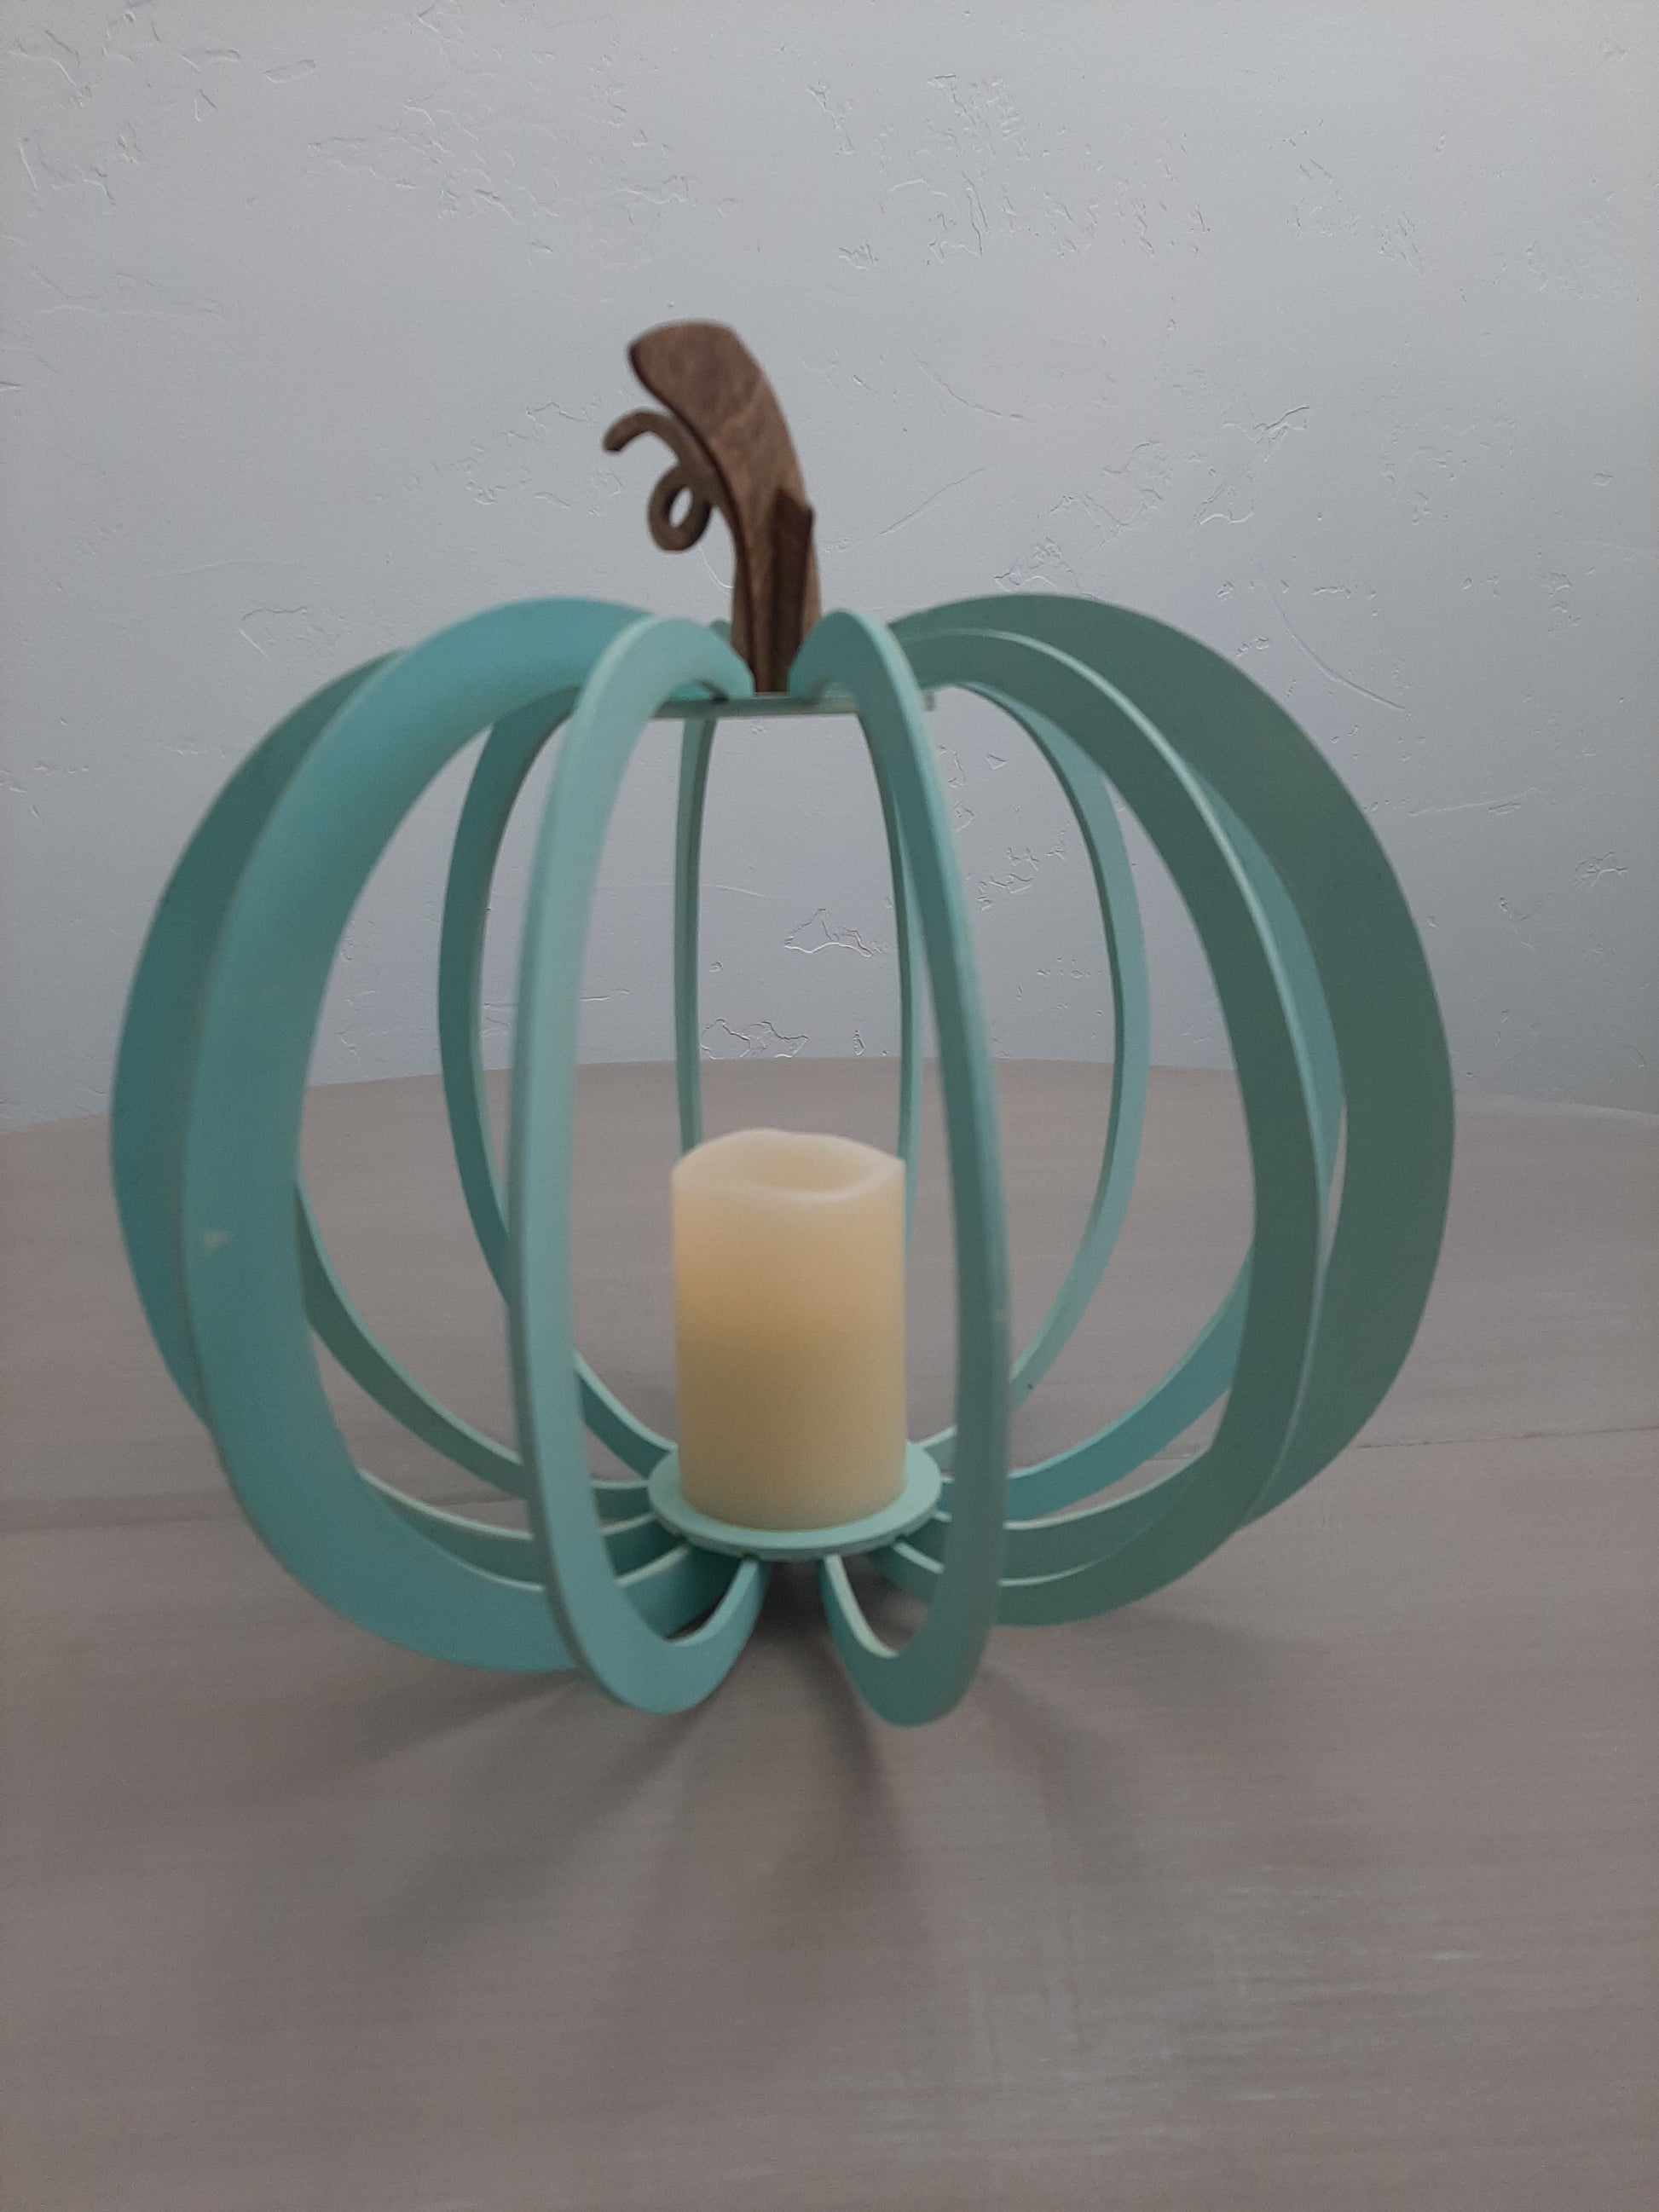 DIY Ceramic Pumpkin Candle Making Kit – The Crafty Kit